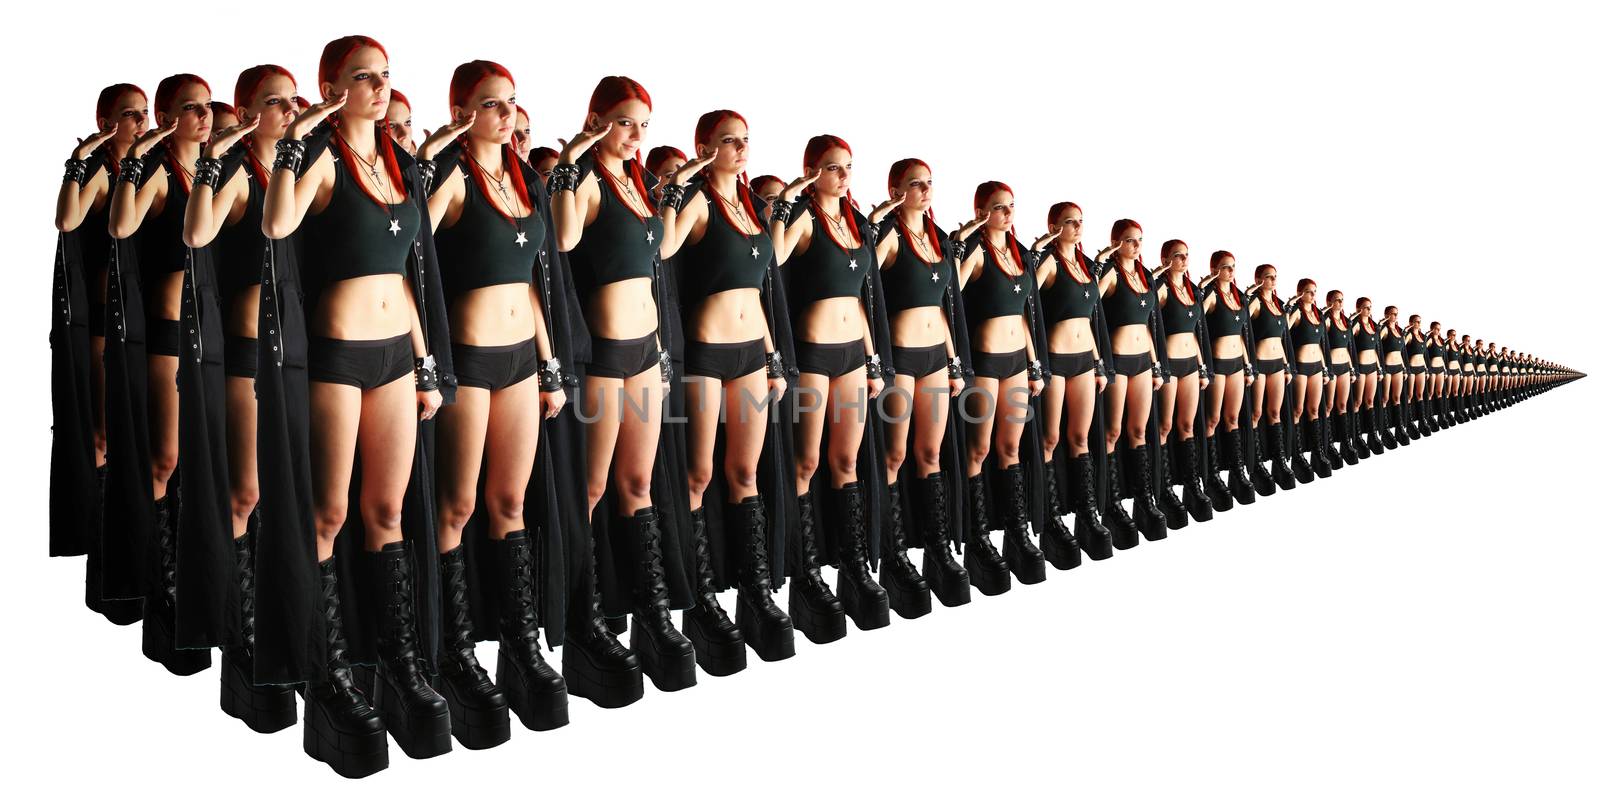 Army of clones by Aarstudio